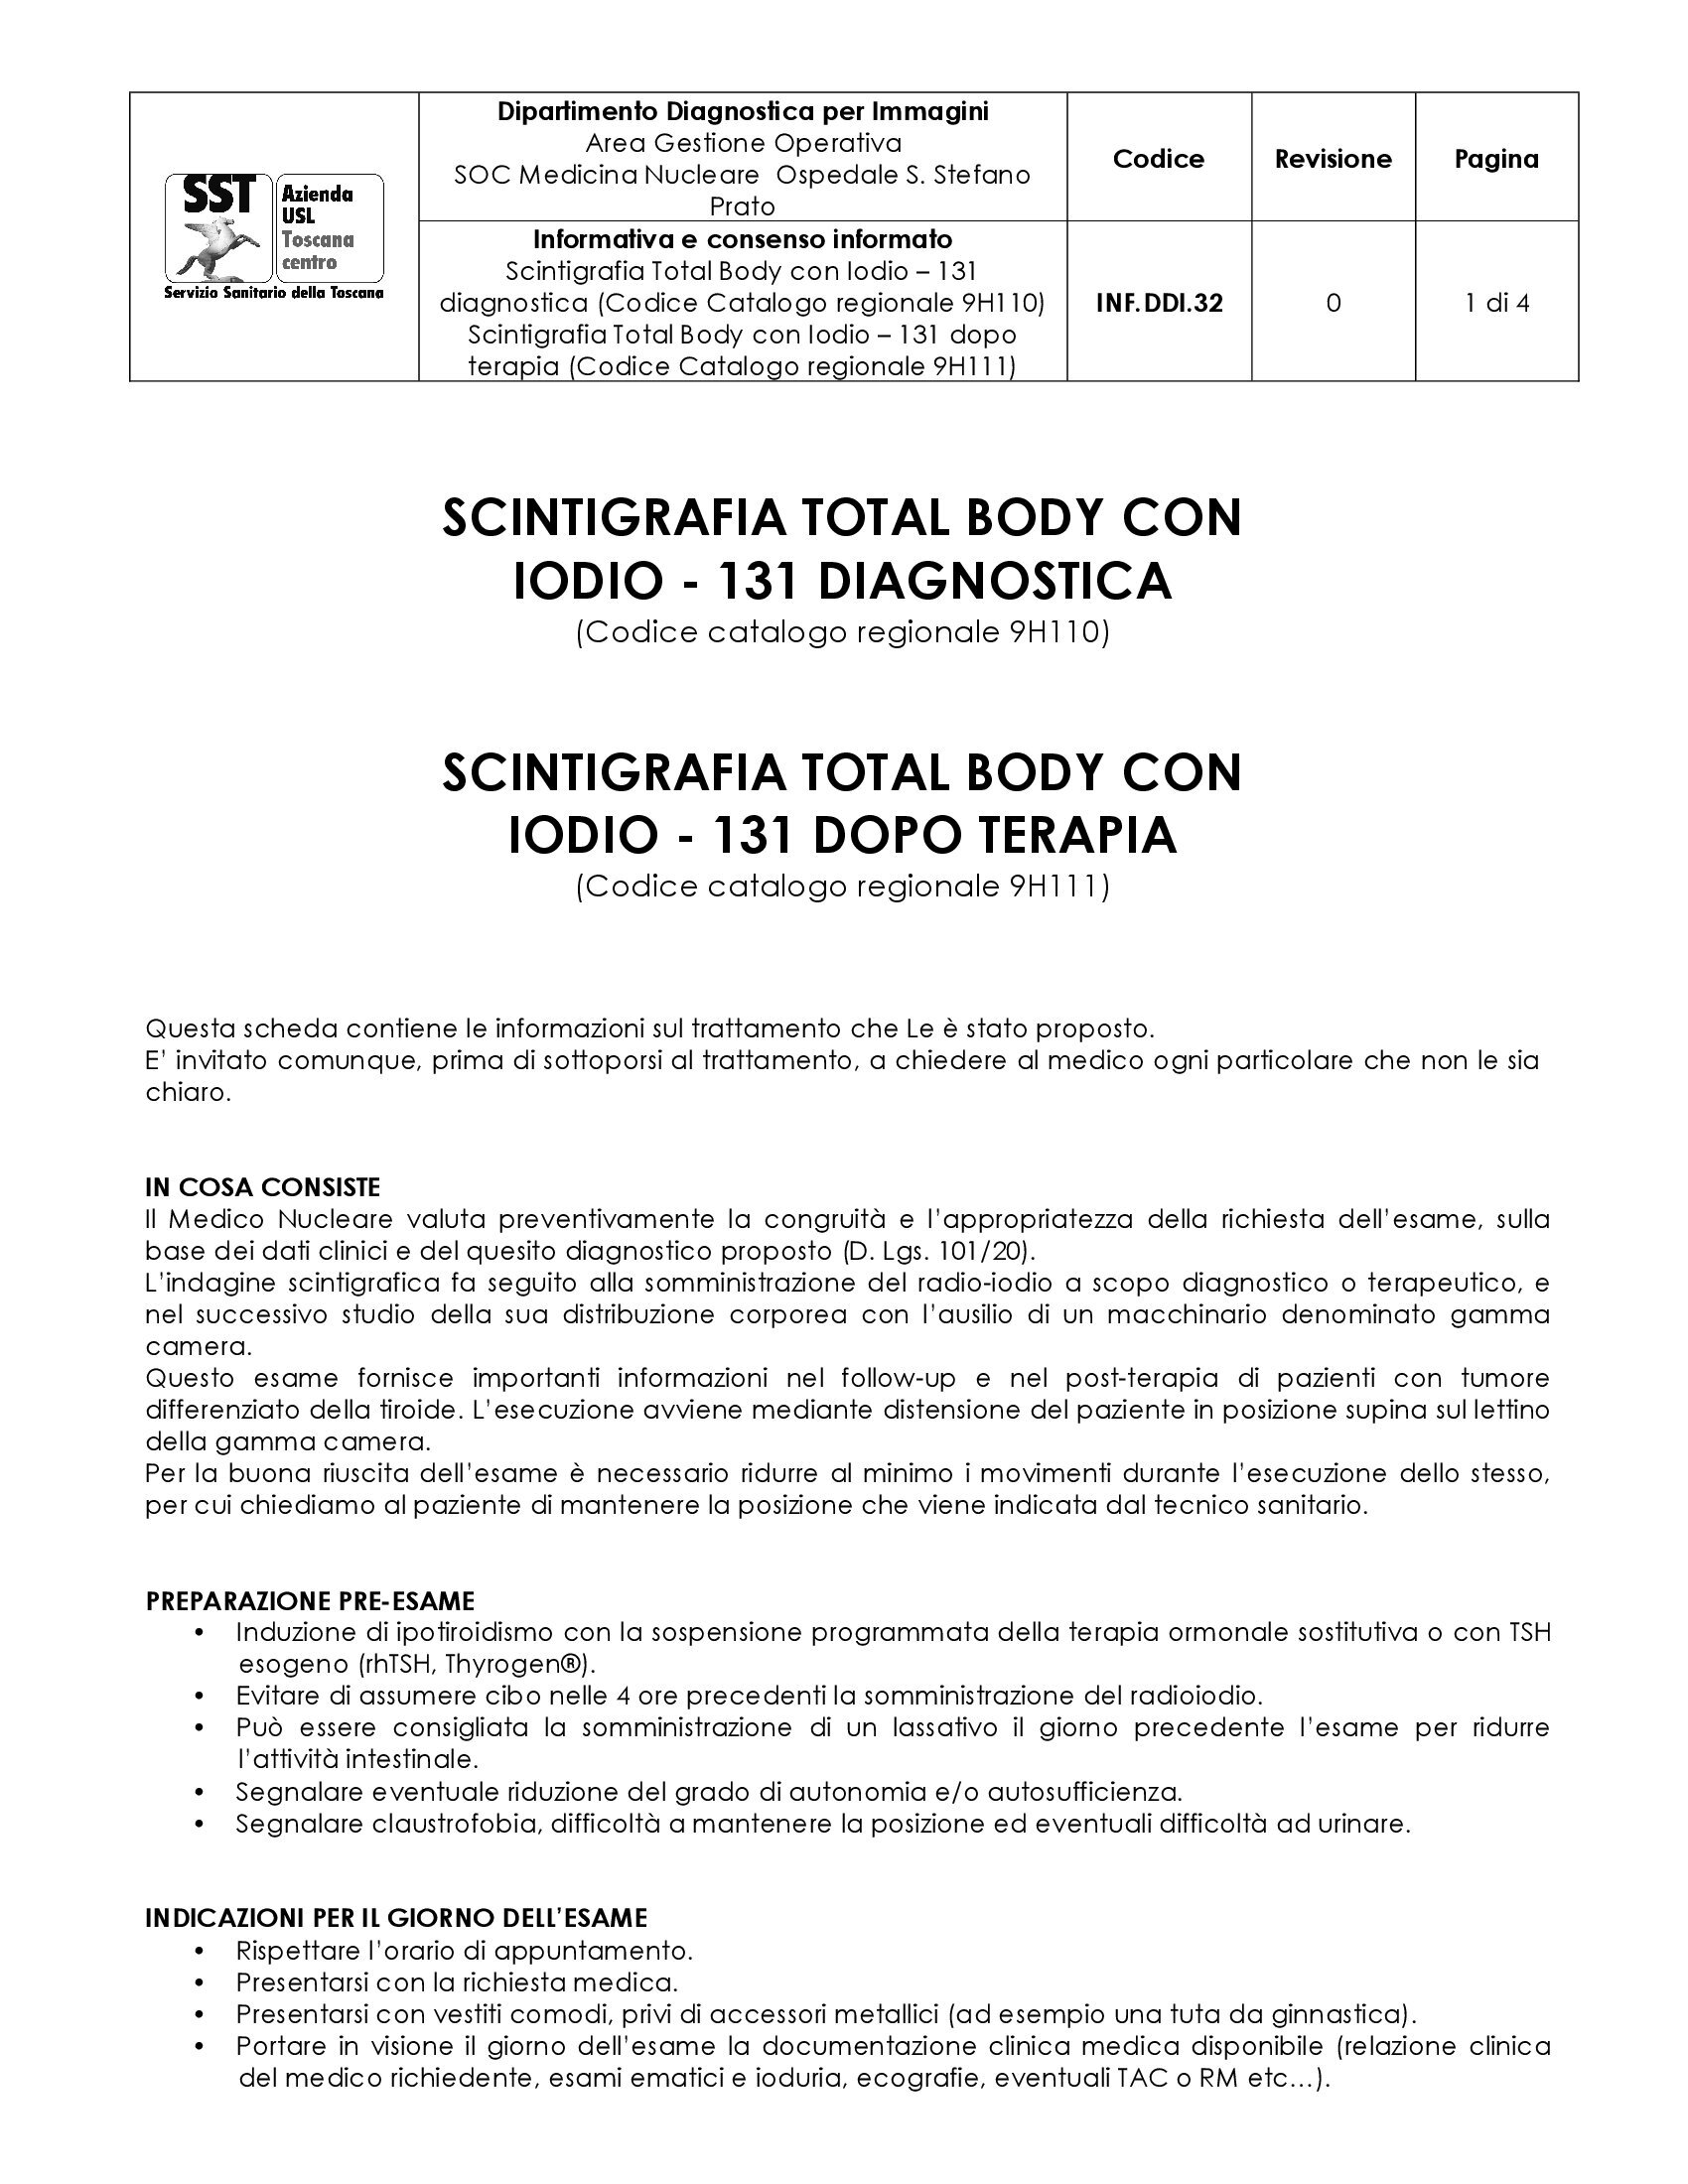 INF.DDI.32 Scintigrafia Total Body con Iodio – 131 diagnostica (Codice Catalogo regionale 9H110) Scintigrafia Total Body con Iodio – 131 dopo terapia (Codice Catalogo regionale 9H111)